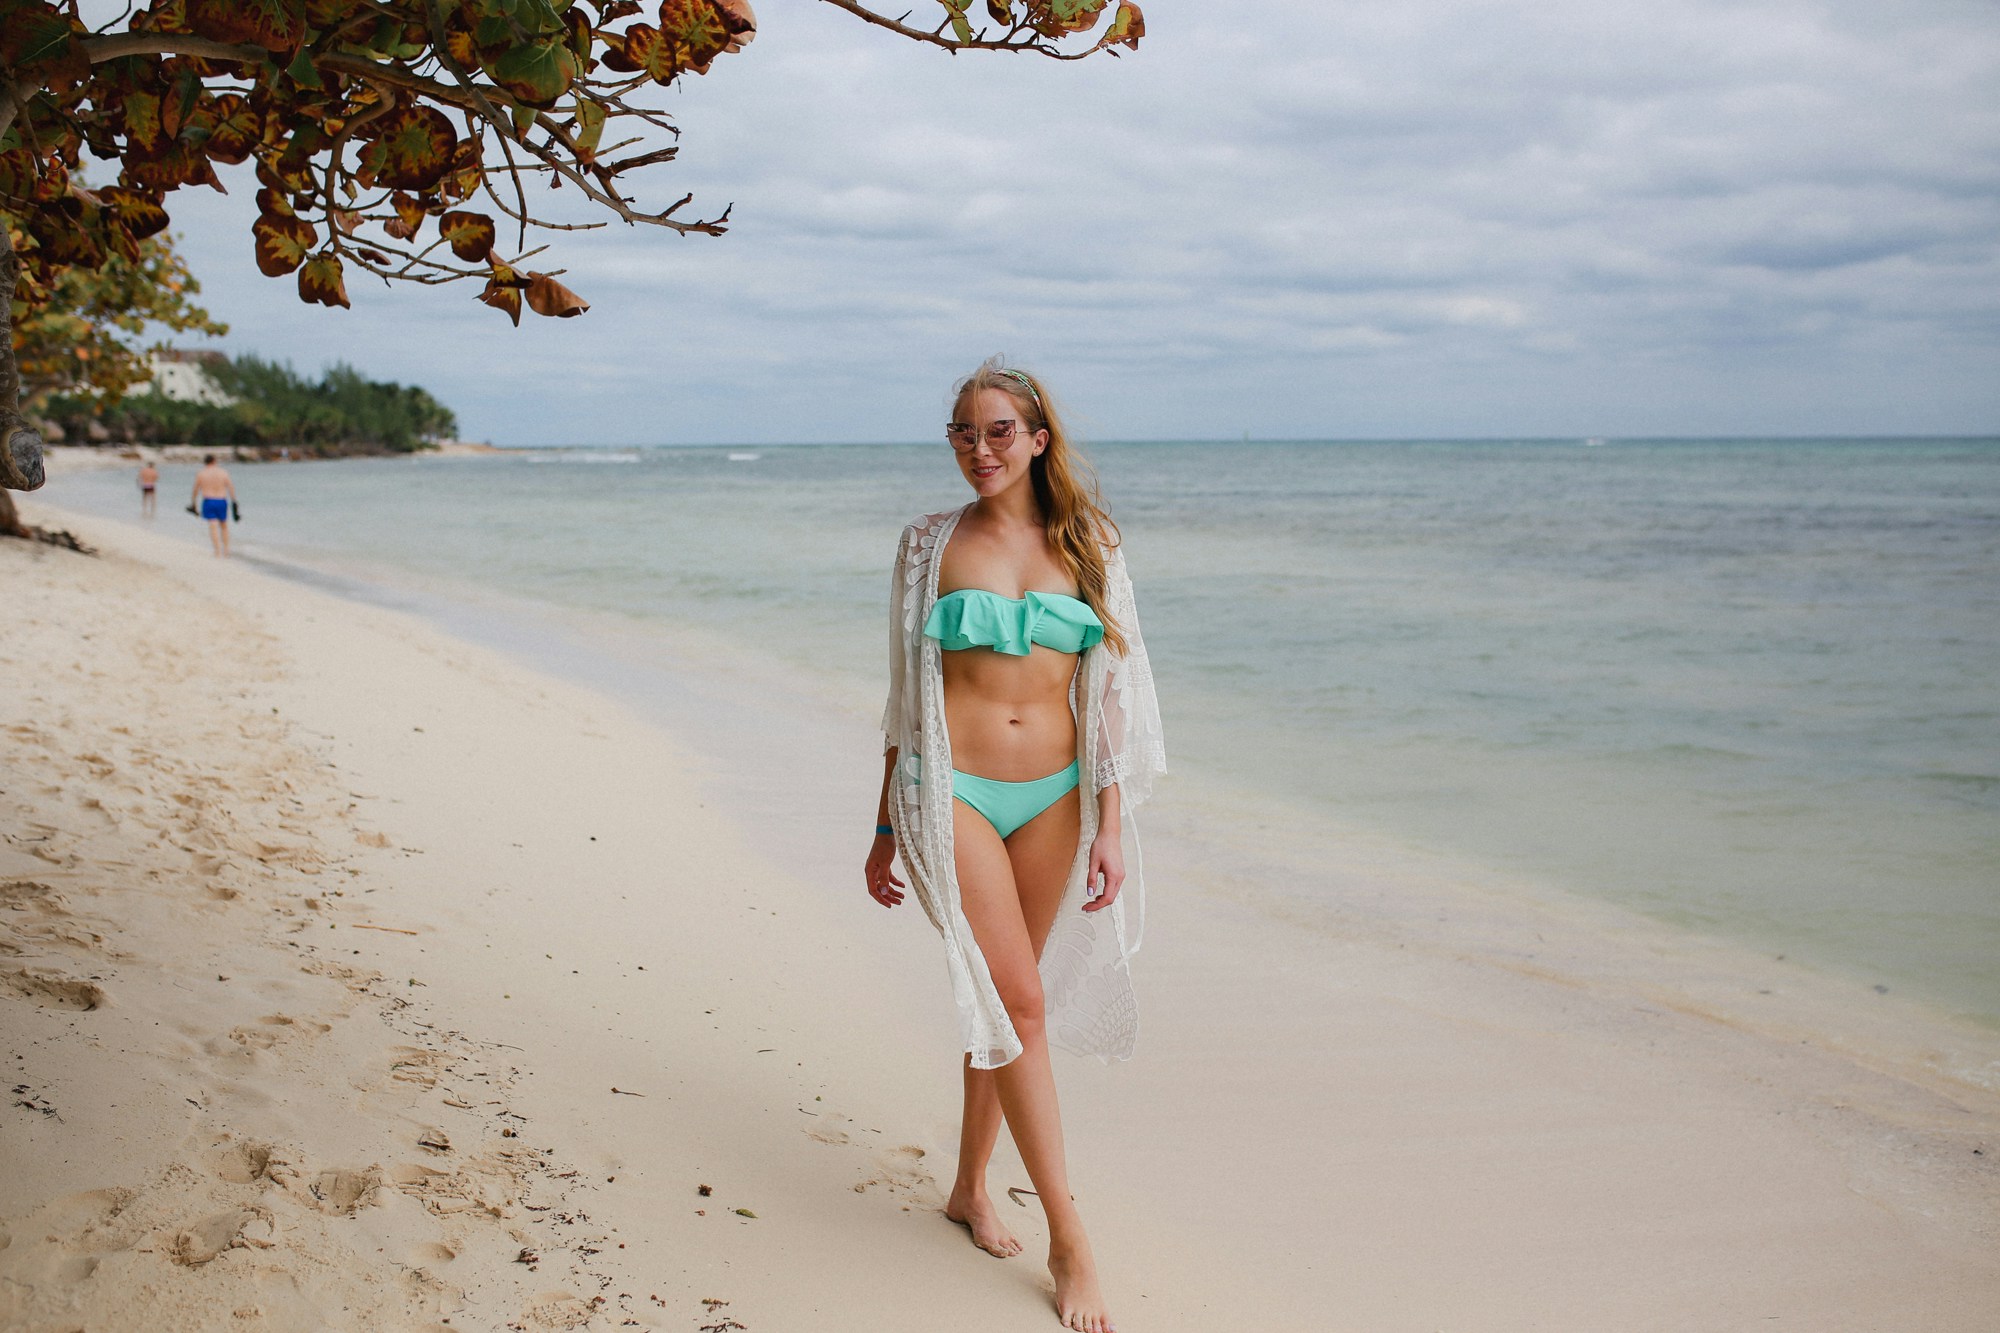 Aqua Victoria's Secret bathing suit and white lace Amazon coverup.